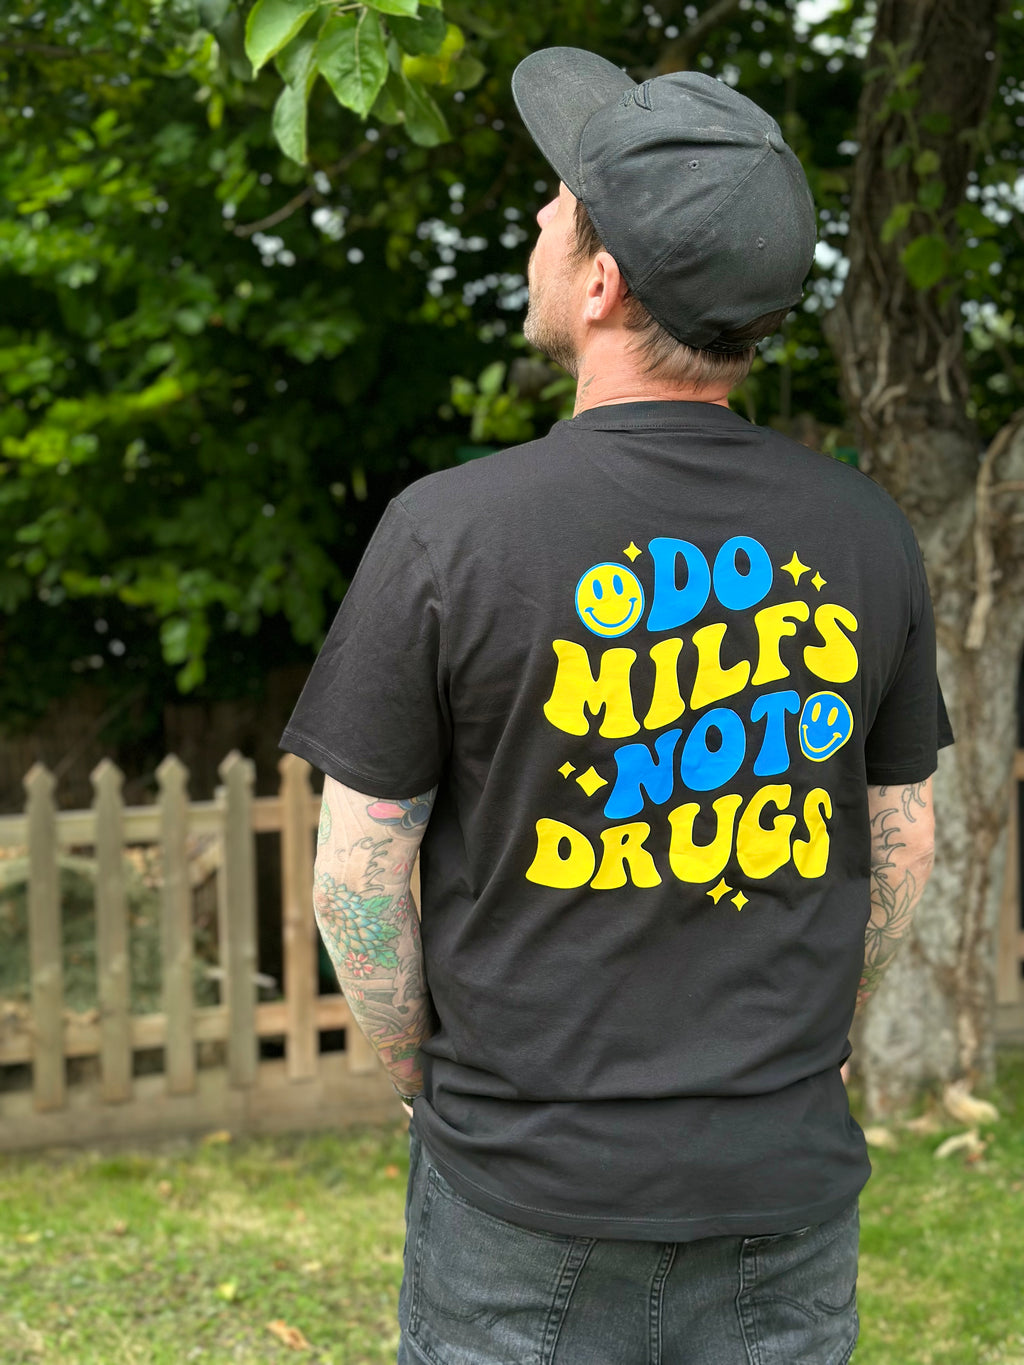 Milfs not Drugs Tshirt